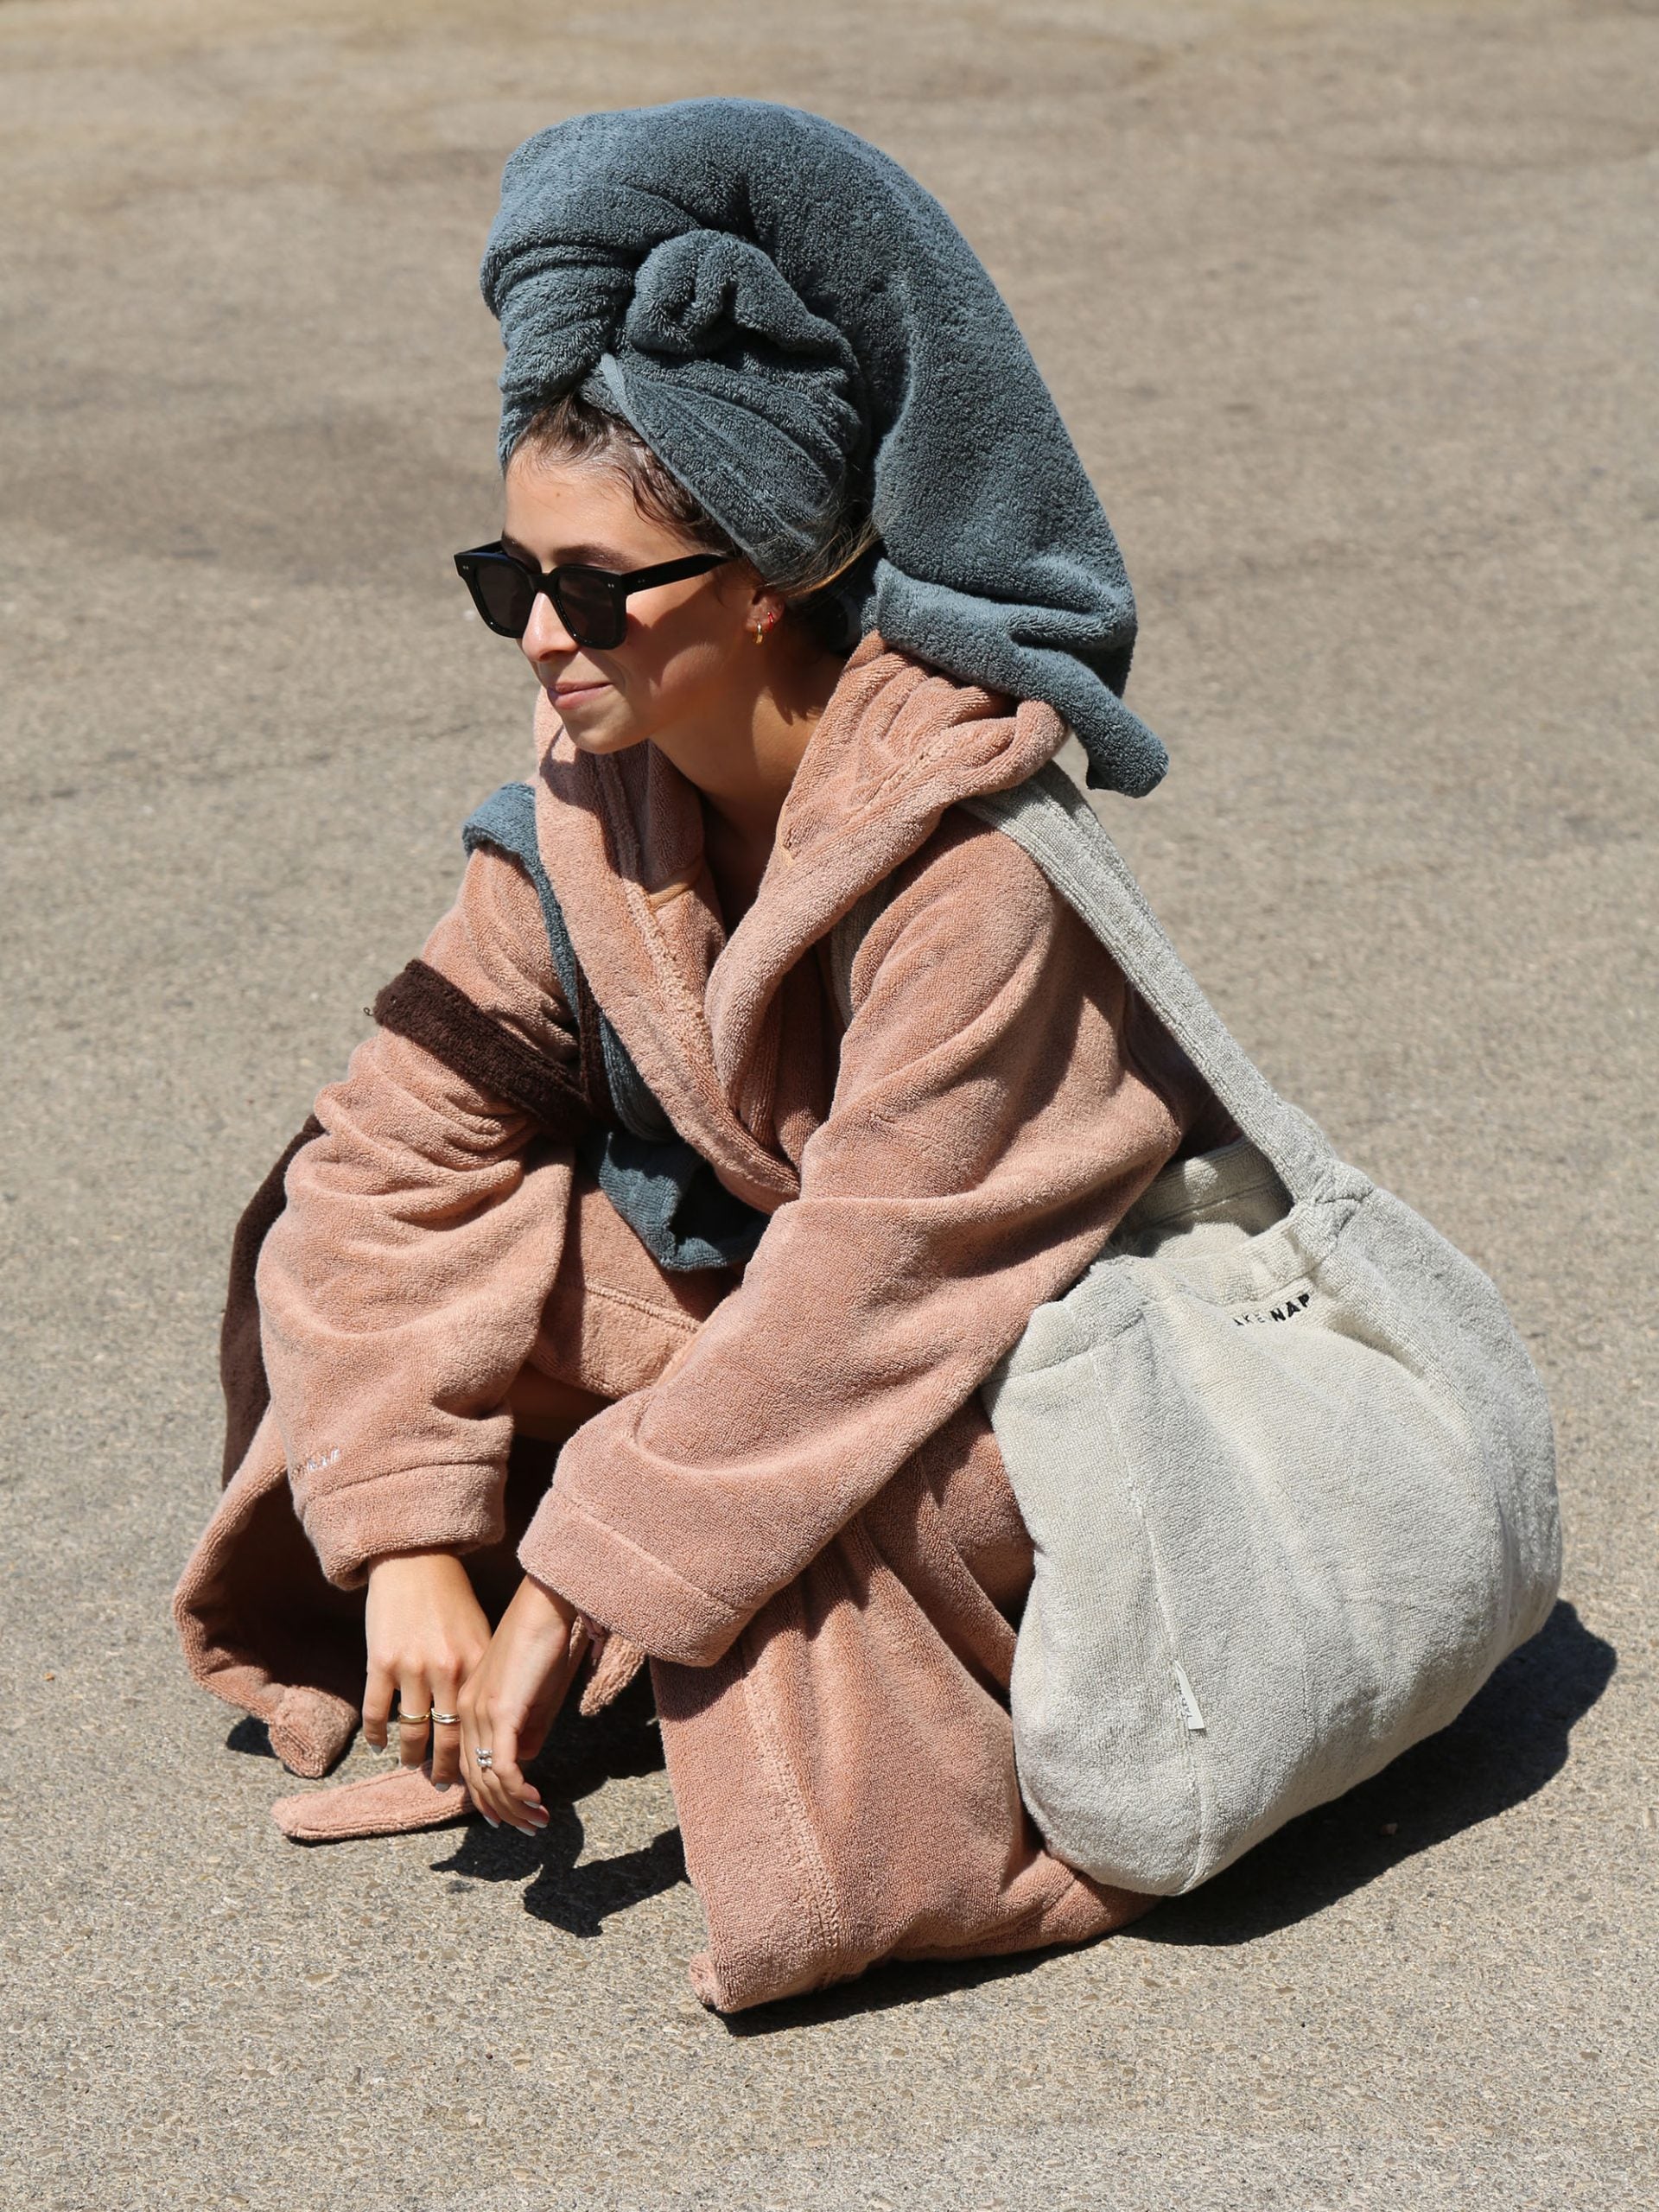 אישה יושבת על משטח אספלט באור יום עם מגבת על ראשה, לובשת חלוק רחצה ועונדת תיק לים